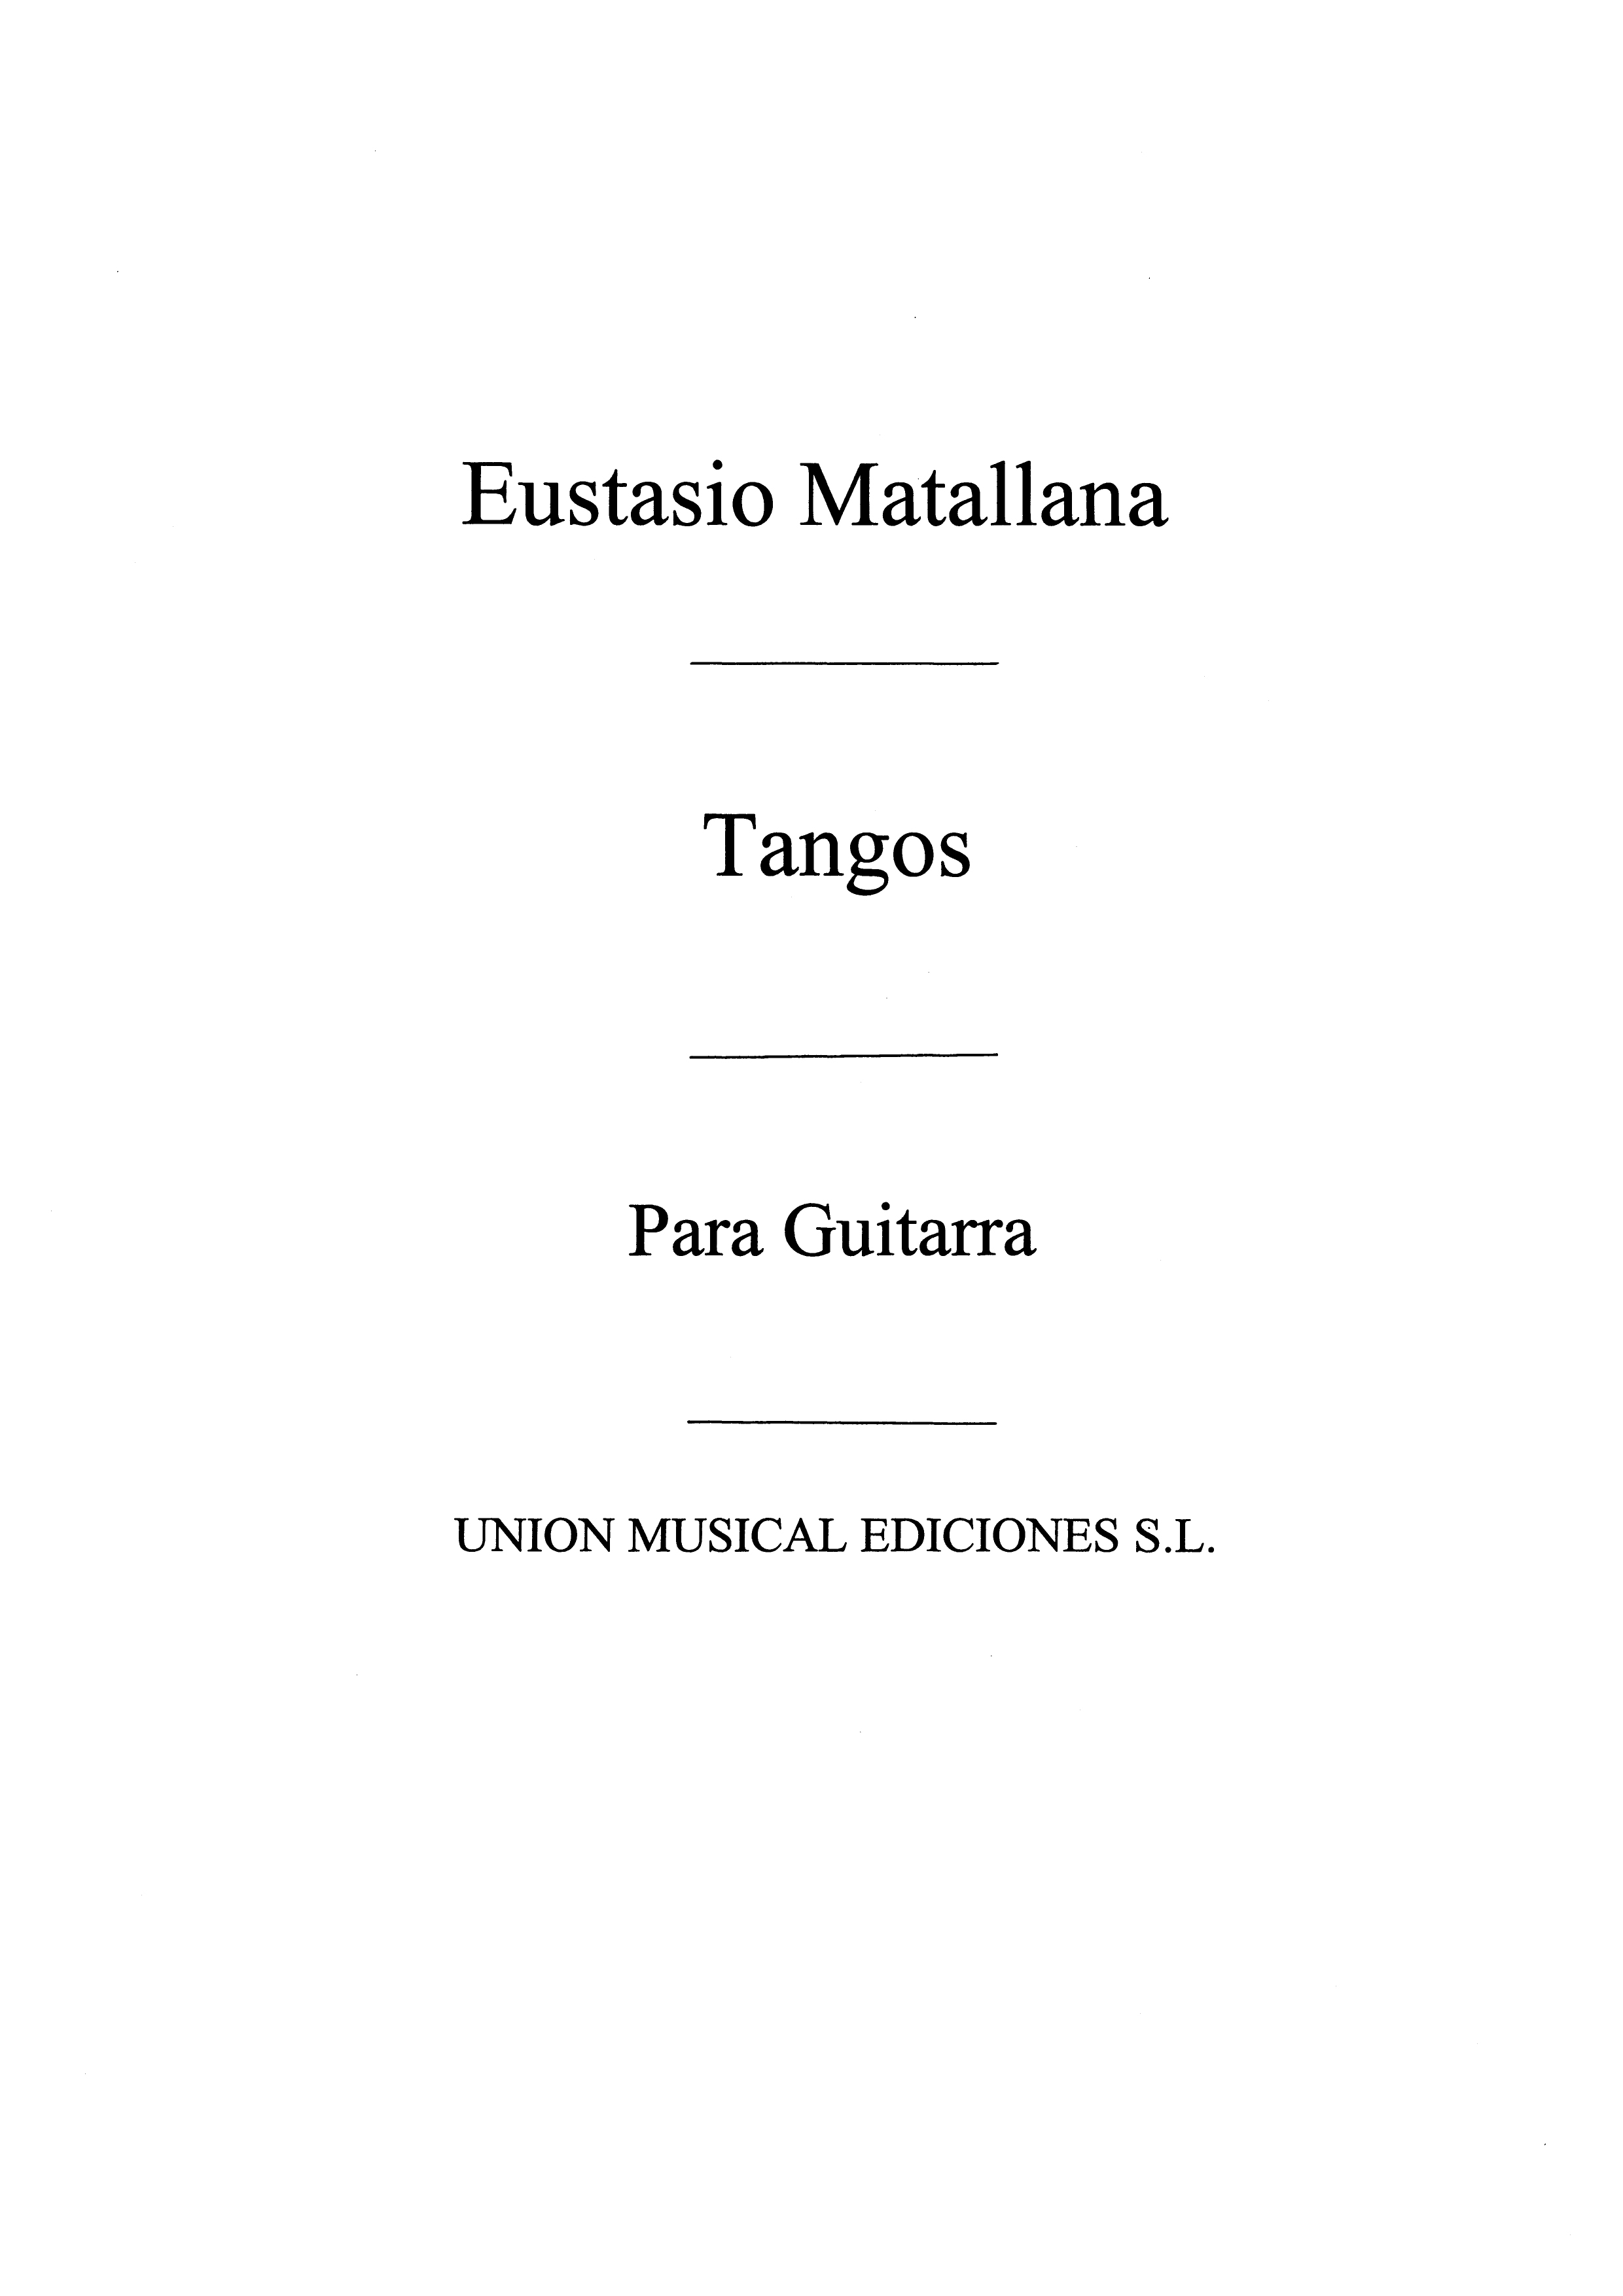 Eustadio Matallana: Seis Tangos No.4 From Bailes Populares Espanoles: Guitar: